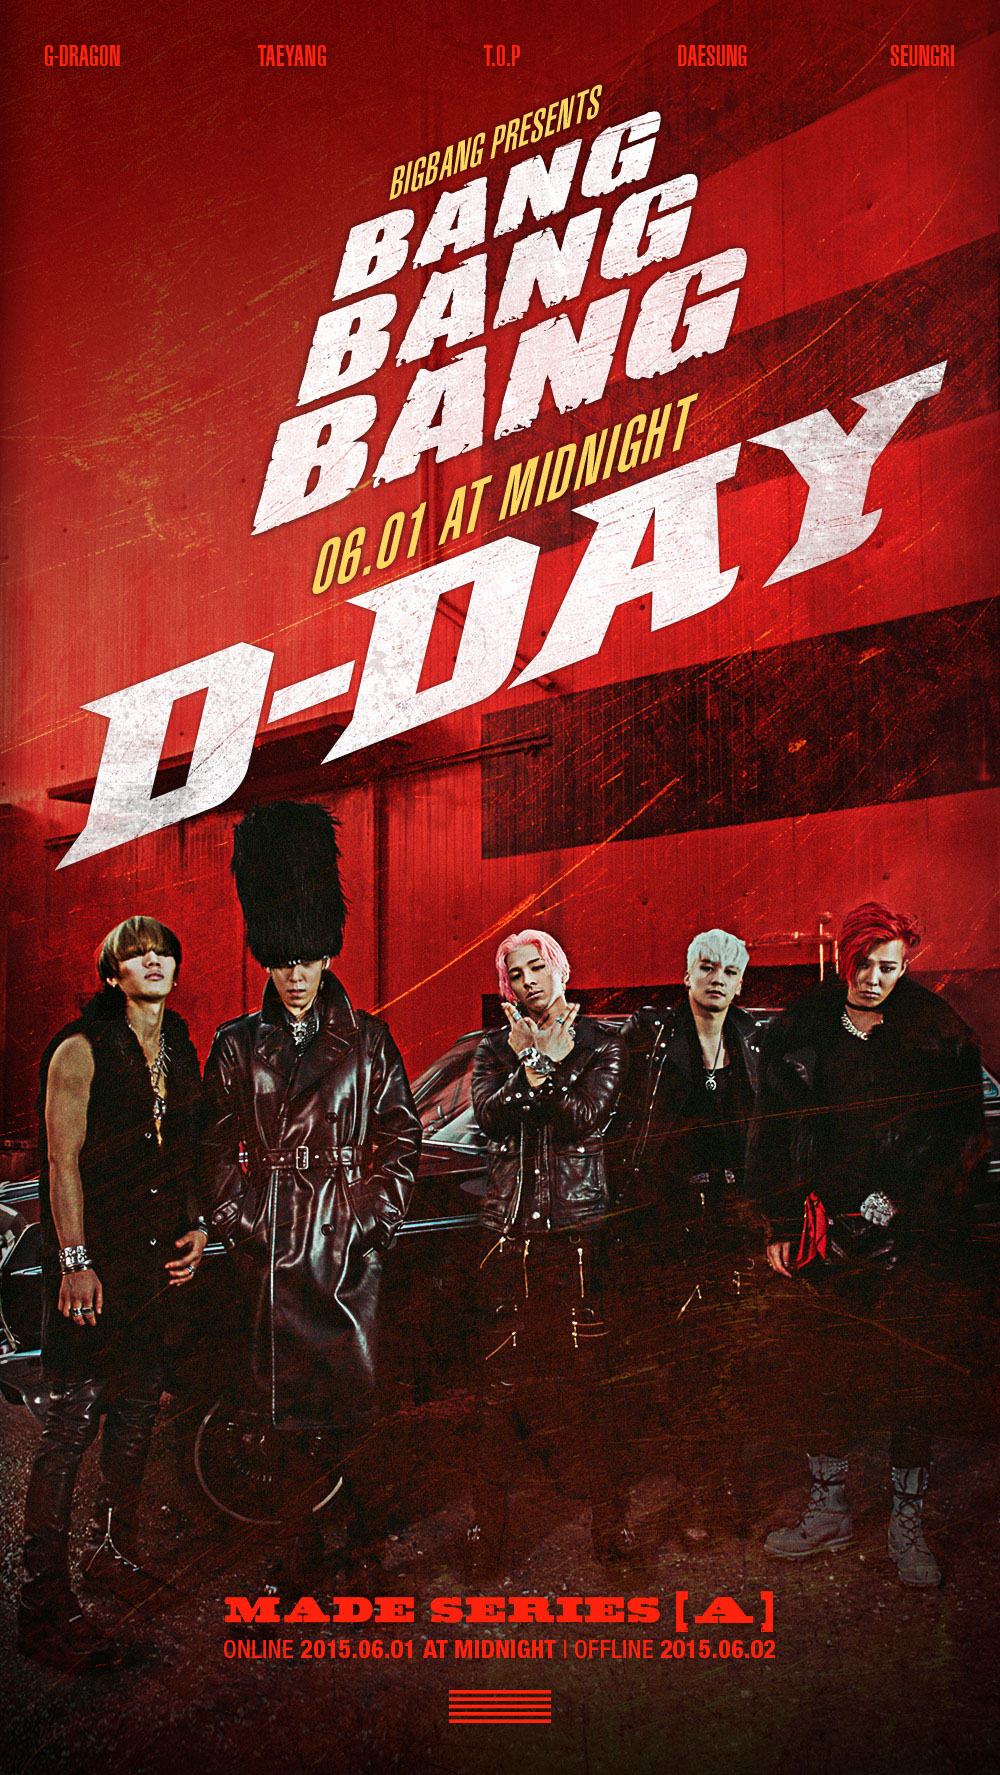 Bigbang made series a 'Bang bang bang' .